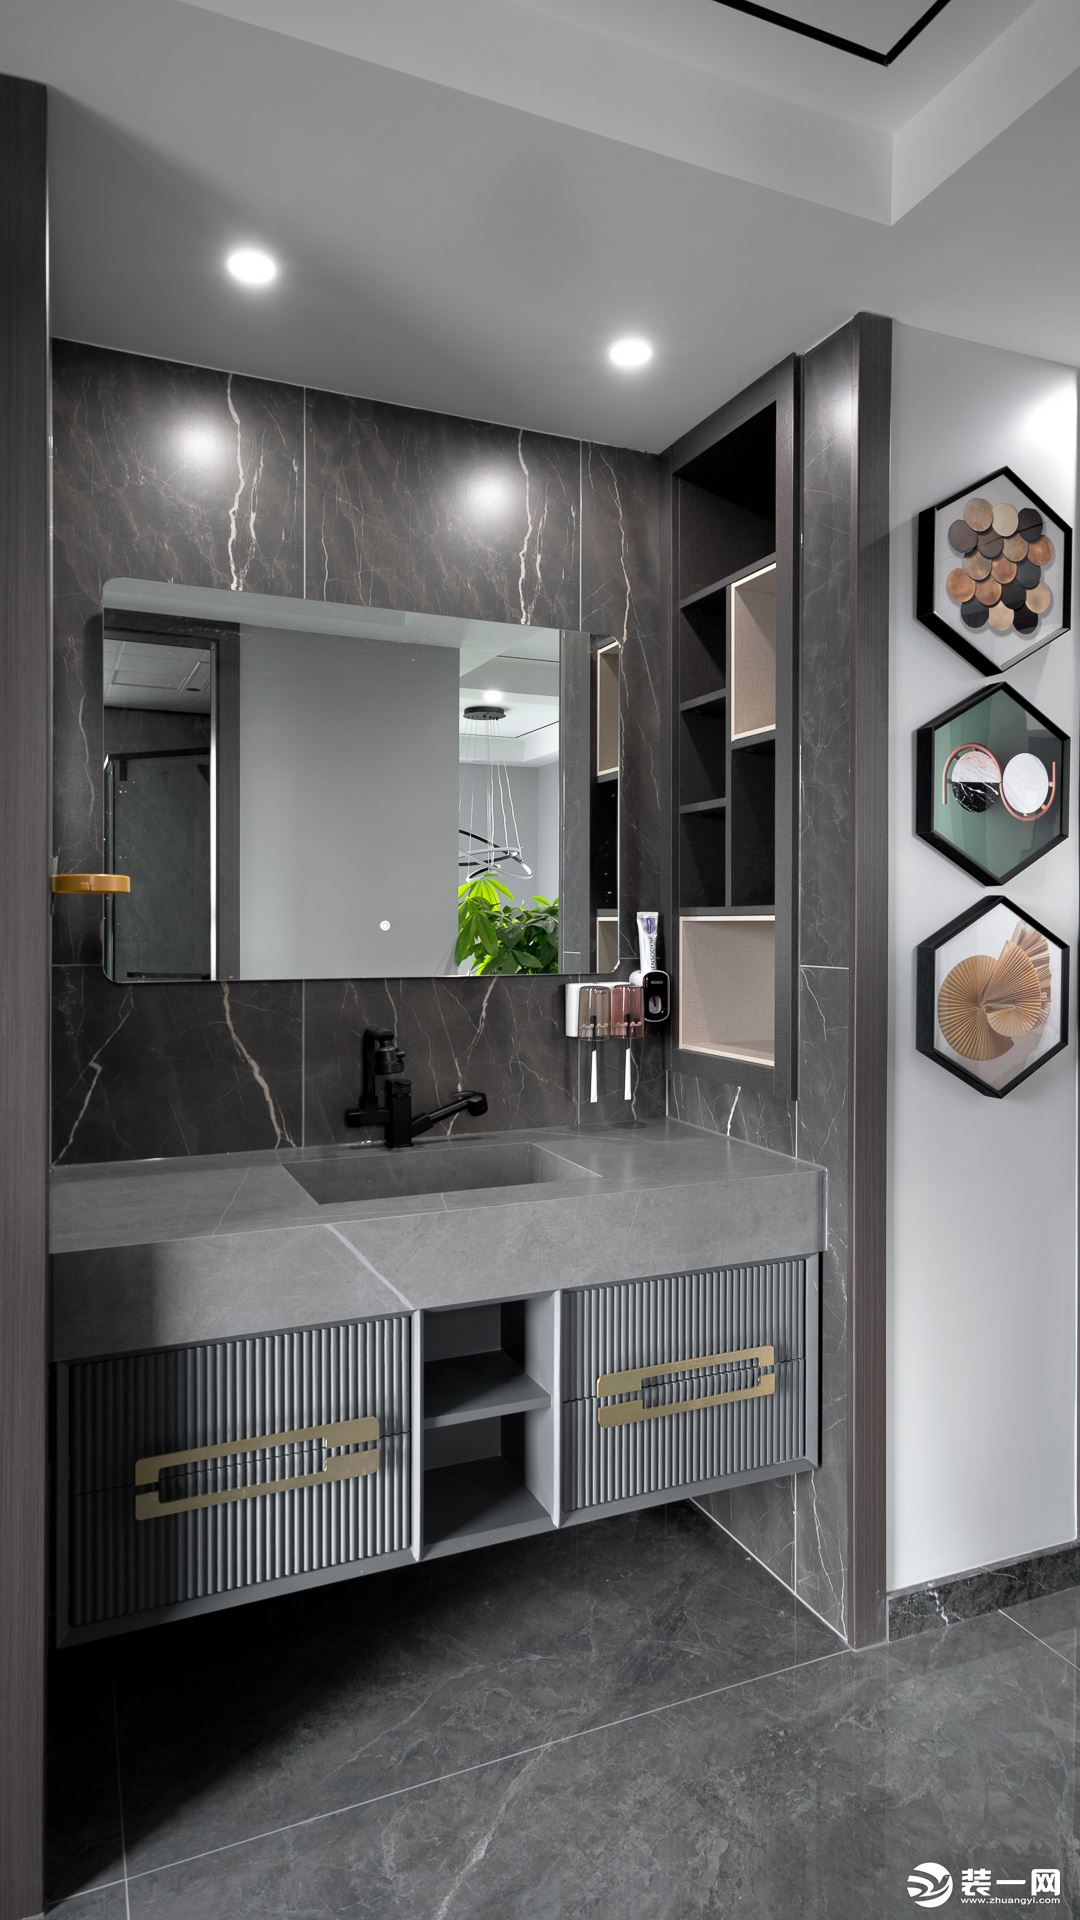 卫浴空间都采用高级的灰色系进行深浅配色，局部点缀金色元素，突出现代轻奢质感。